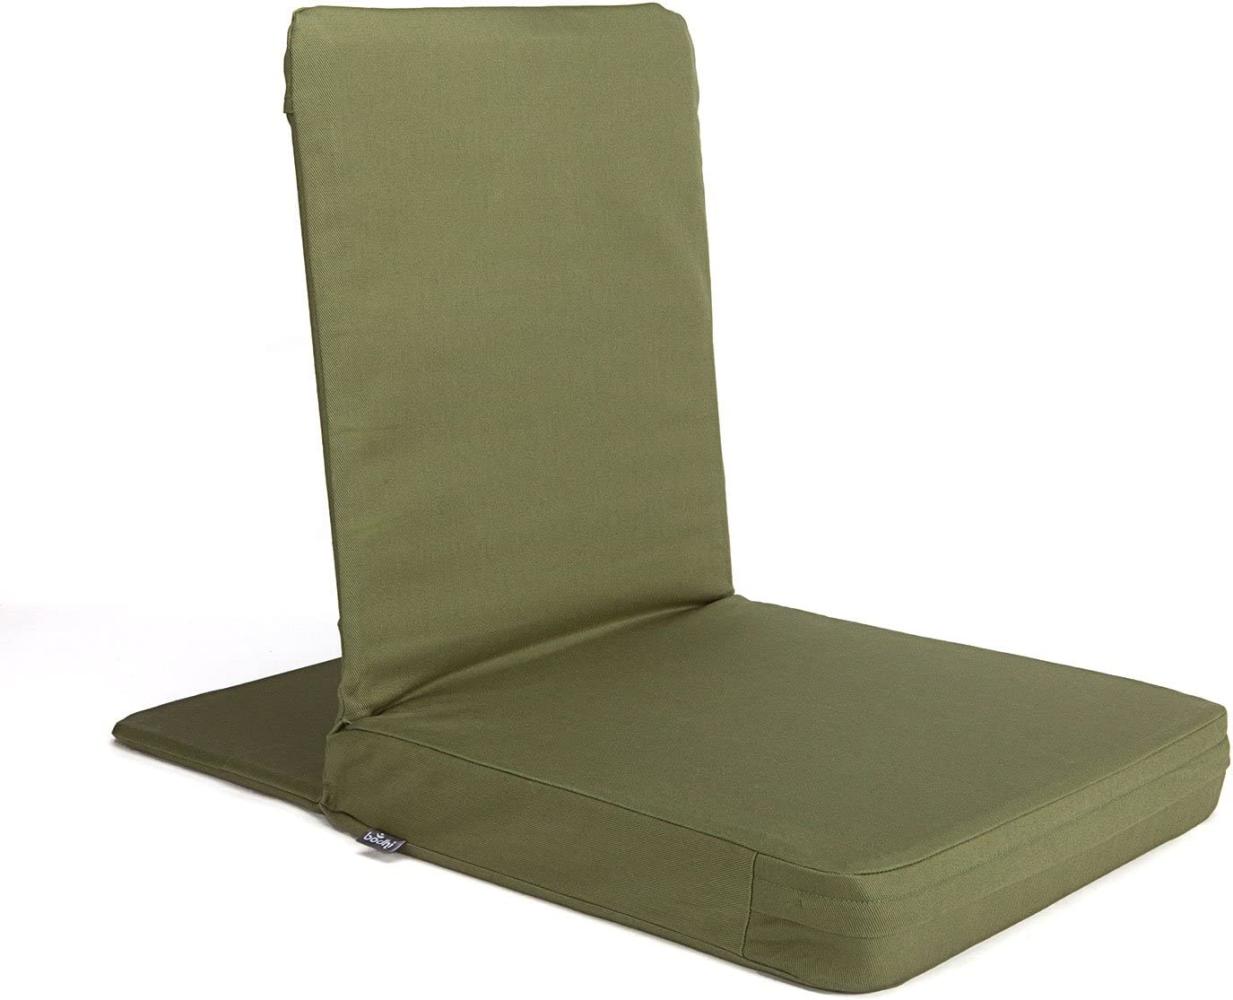 Bodhi Mandir Bodenstuhl XL | Meditationsstuhl mit dickem Sitzkissen | Komfortabler Bodensessel mit gepolsterter Rückenlehne | Waschbarer Bezug | Ideal für Freizeit, Yoga & Meditation (Dusty Green) Bild 1